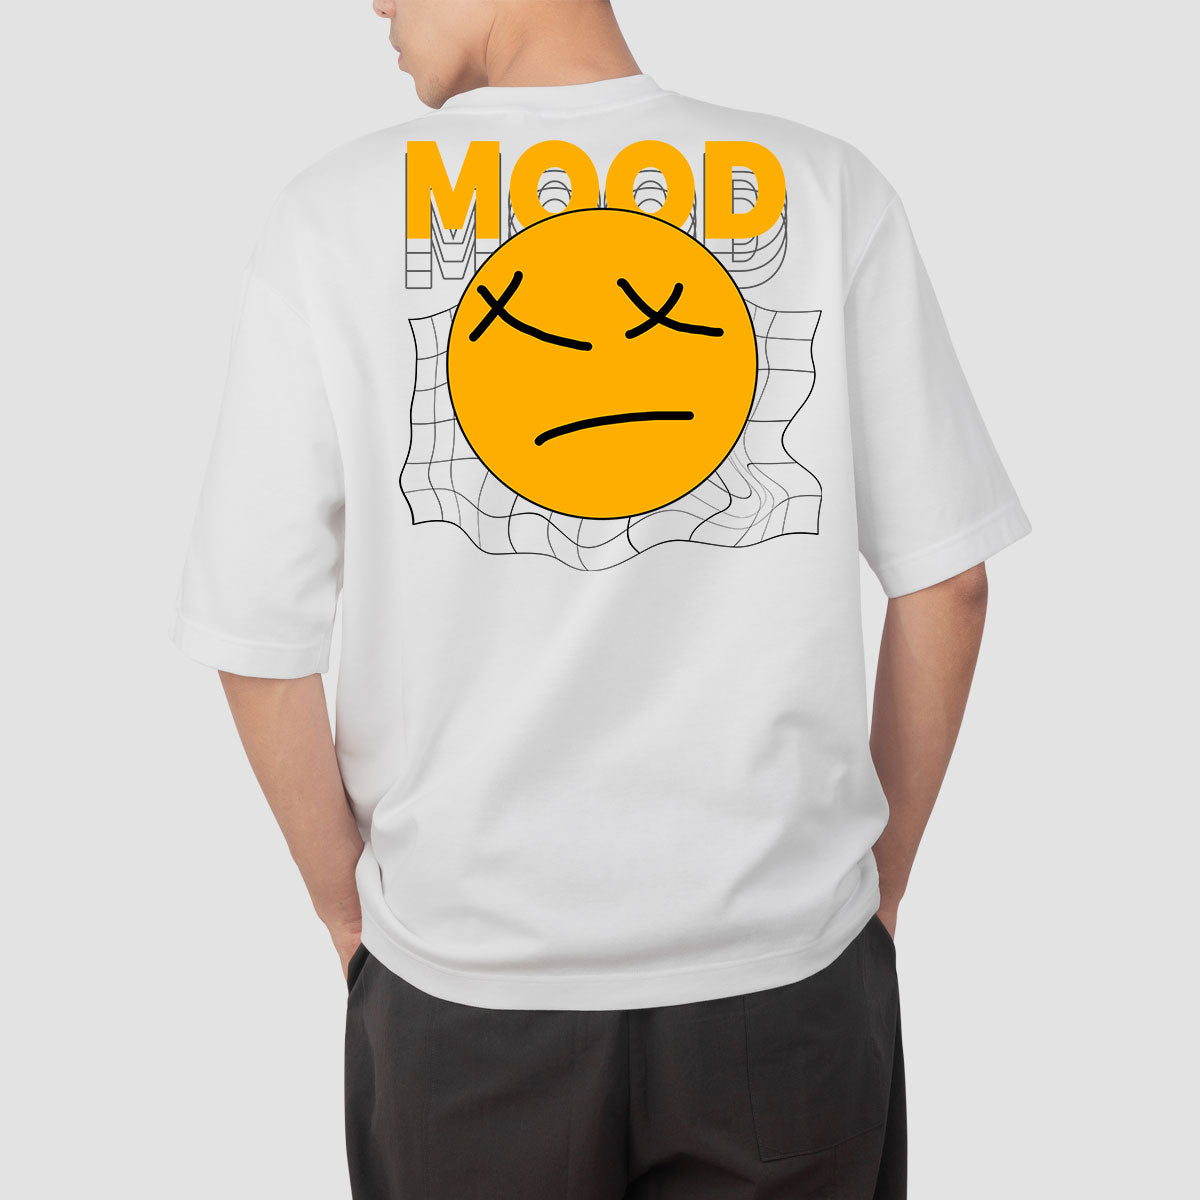 Mood Oversized T Shirt